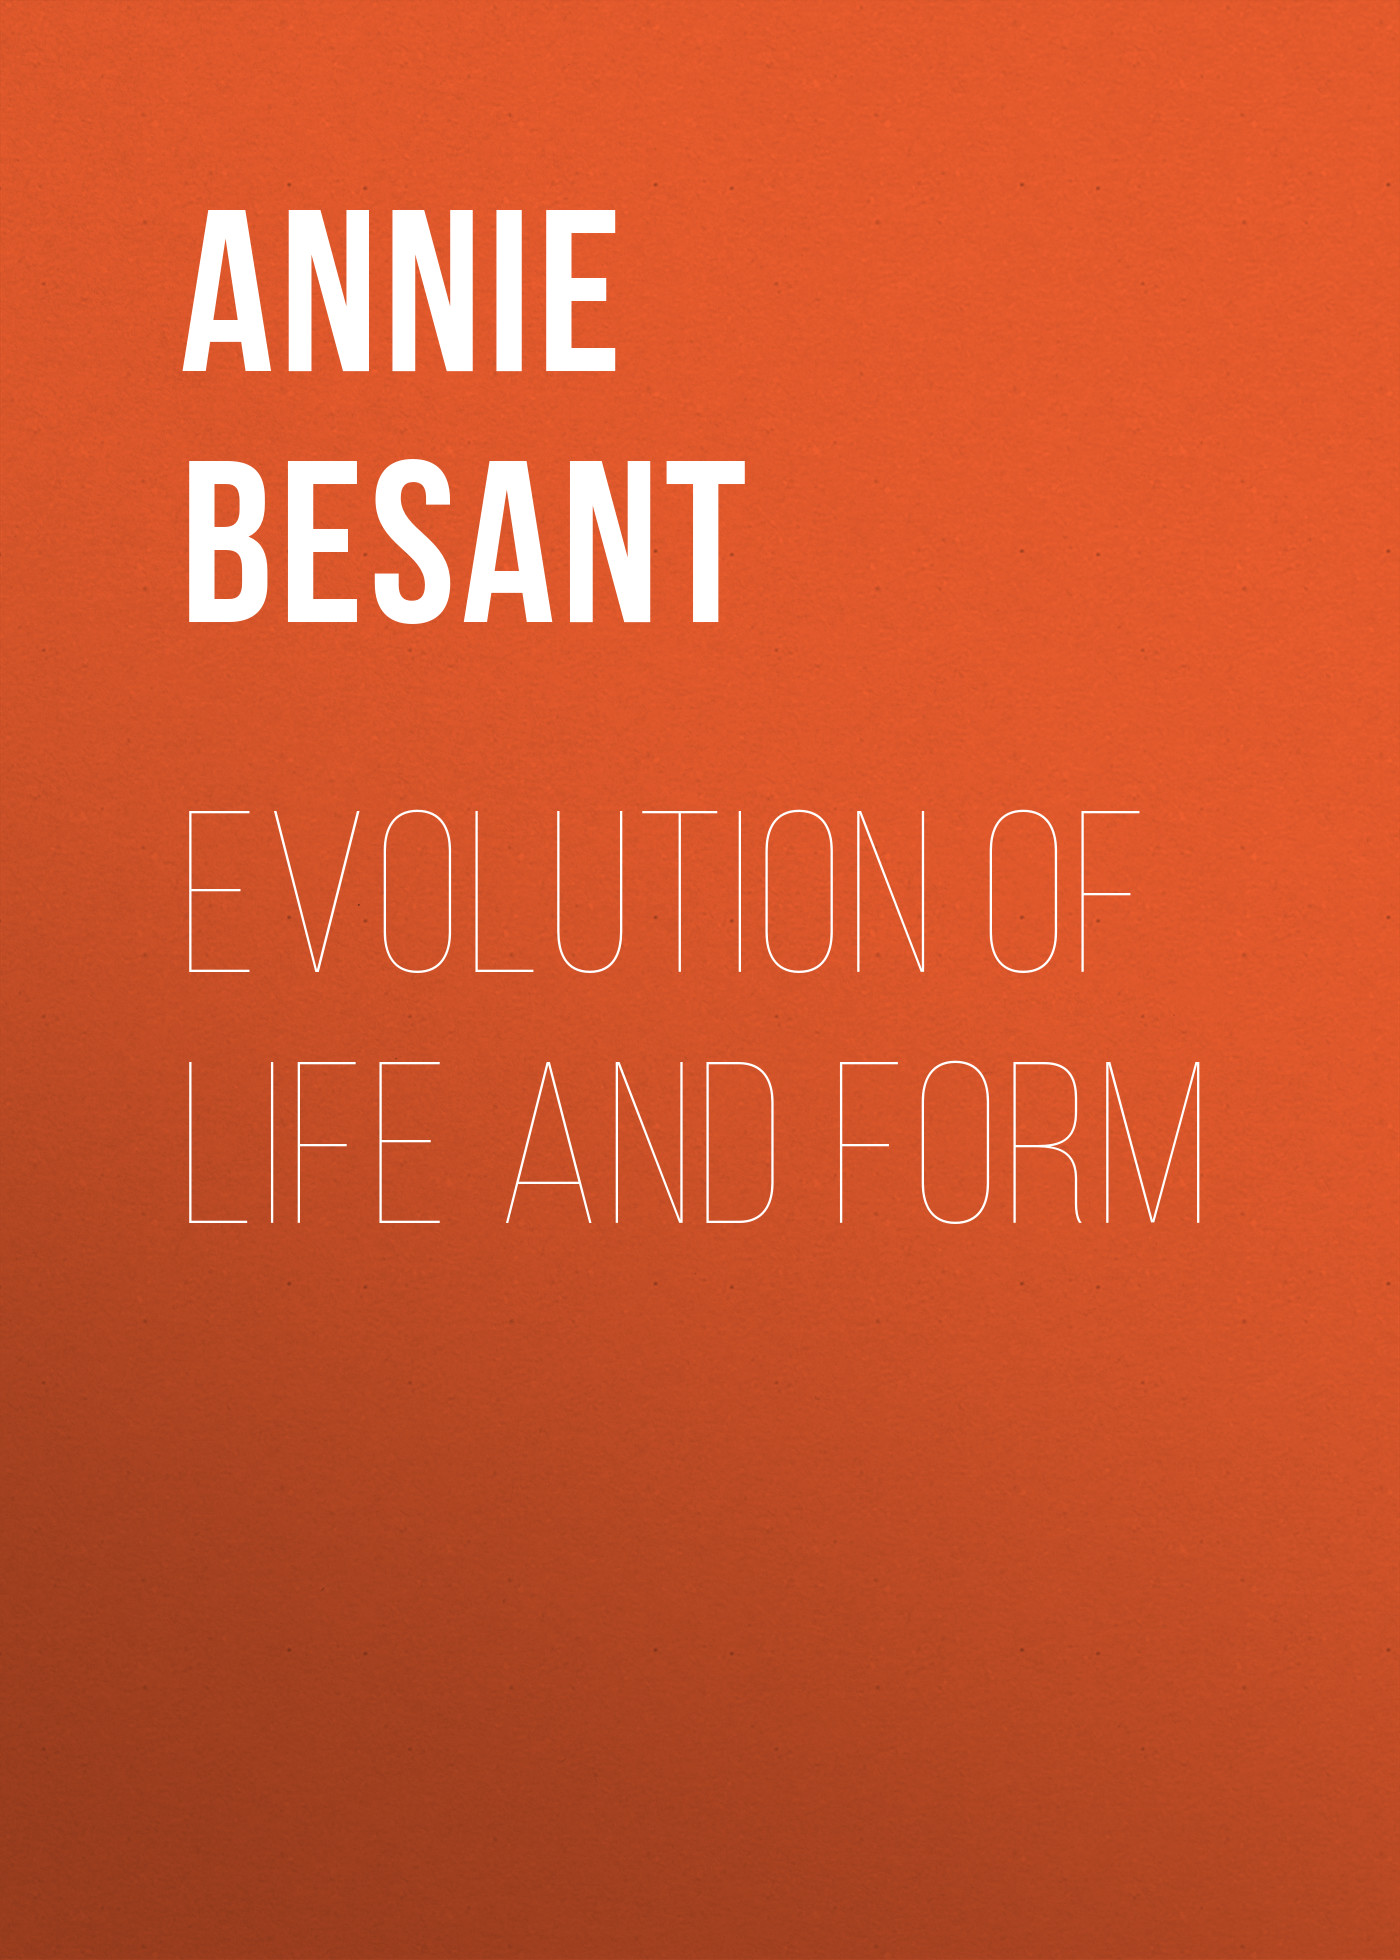 Книга Evolution of Life and Form из серии , созданная Annie Besant, может относится к жанру Зарубежная старинная литература, Зарубежная классика. Стоимость электронной книги Evolution of Life and Form с идентификатором 24168668 составляет 0.90 руб.